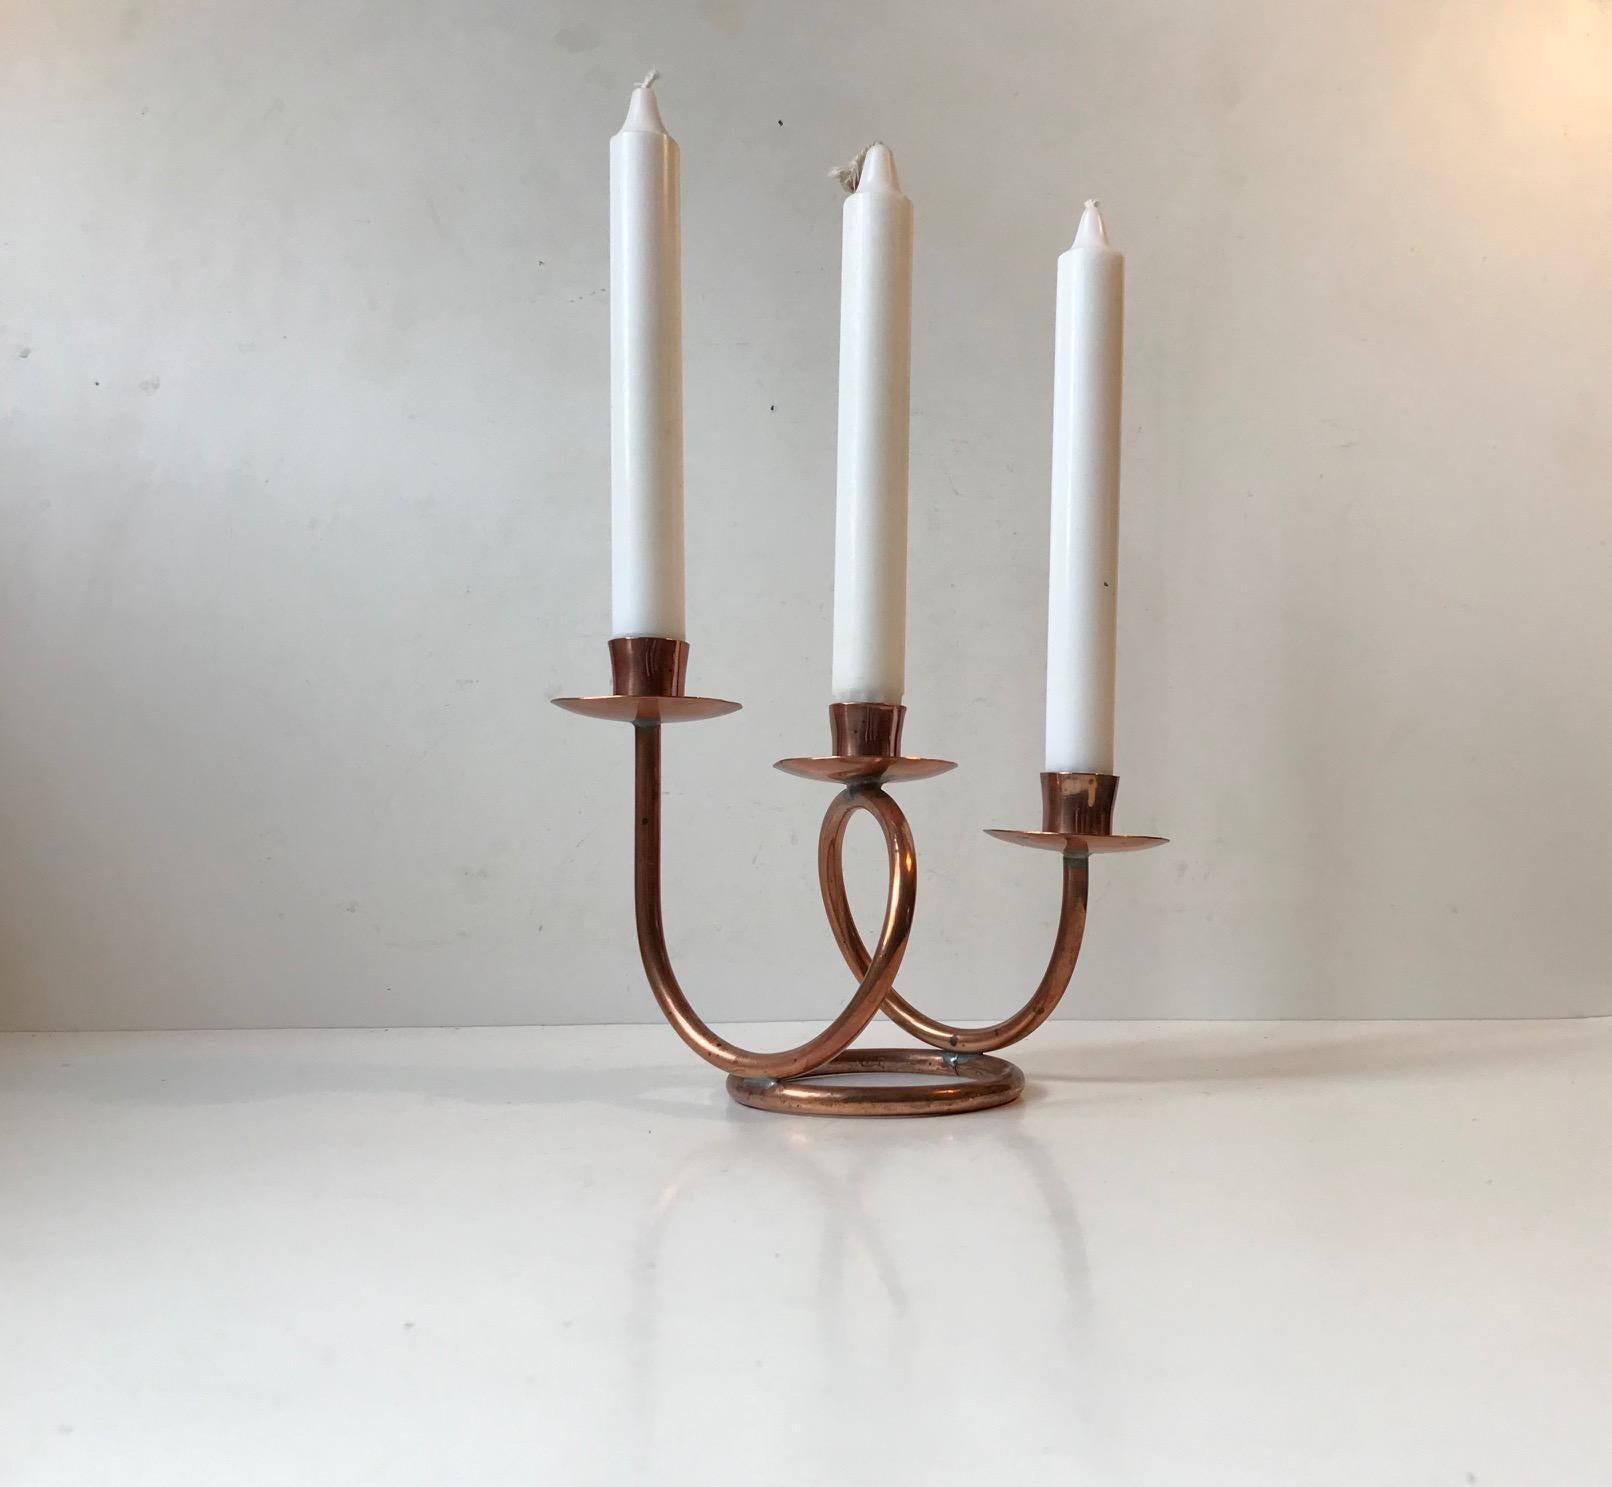 Petit candélabre unique fabriqué à partir de tubes de cuivre massif pliés. Fabriqué à la main dans un petit atelier de Hejl, au Danemark, dans les années 1970. Il doit être installé avec des bougies de taille normale.